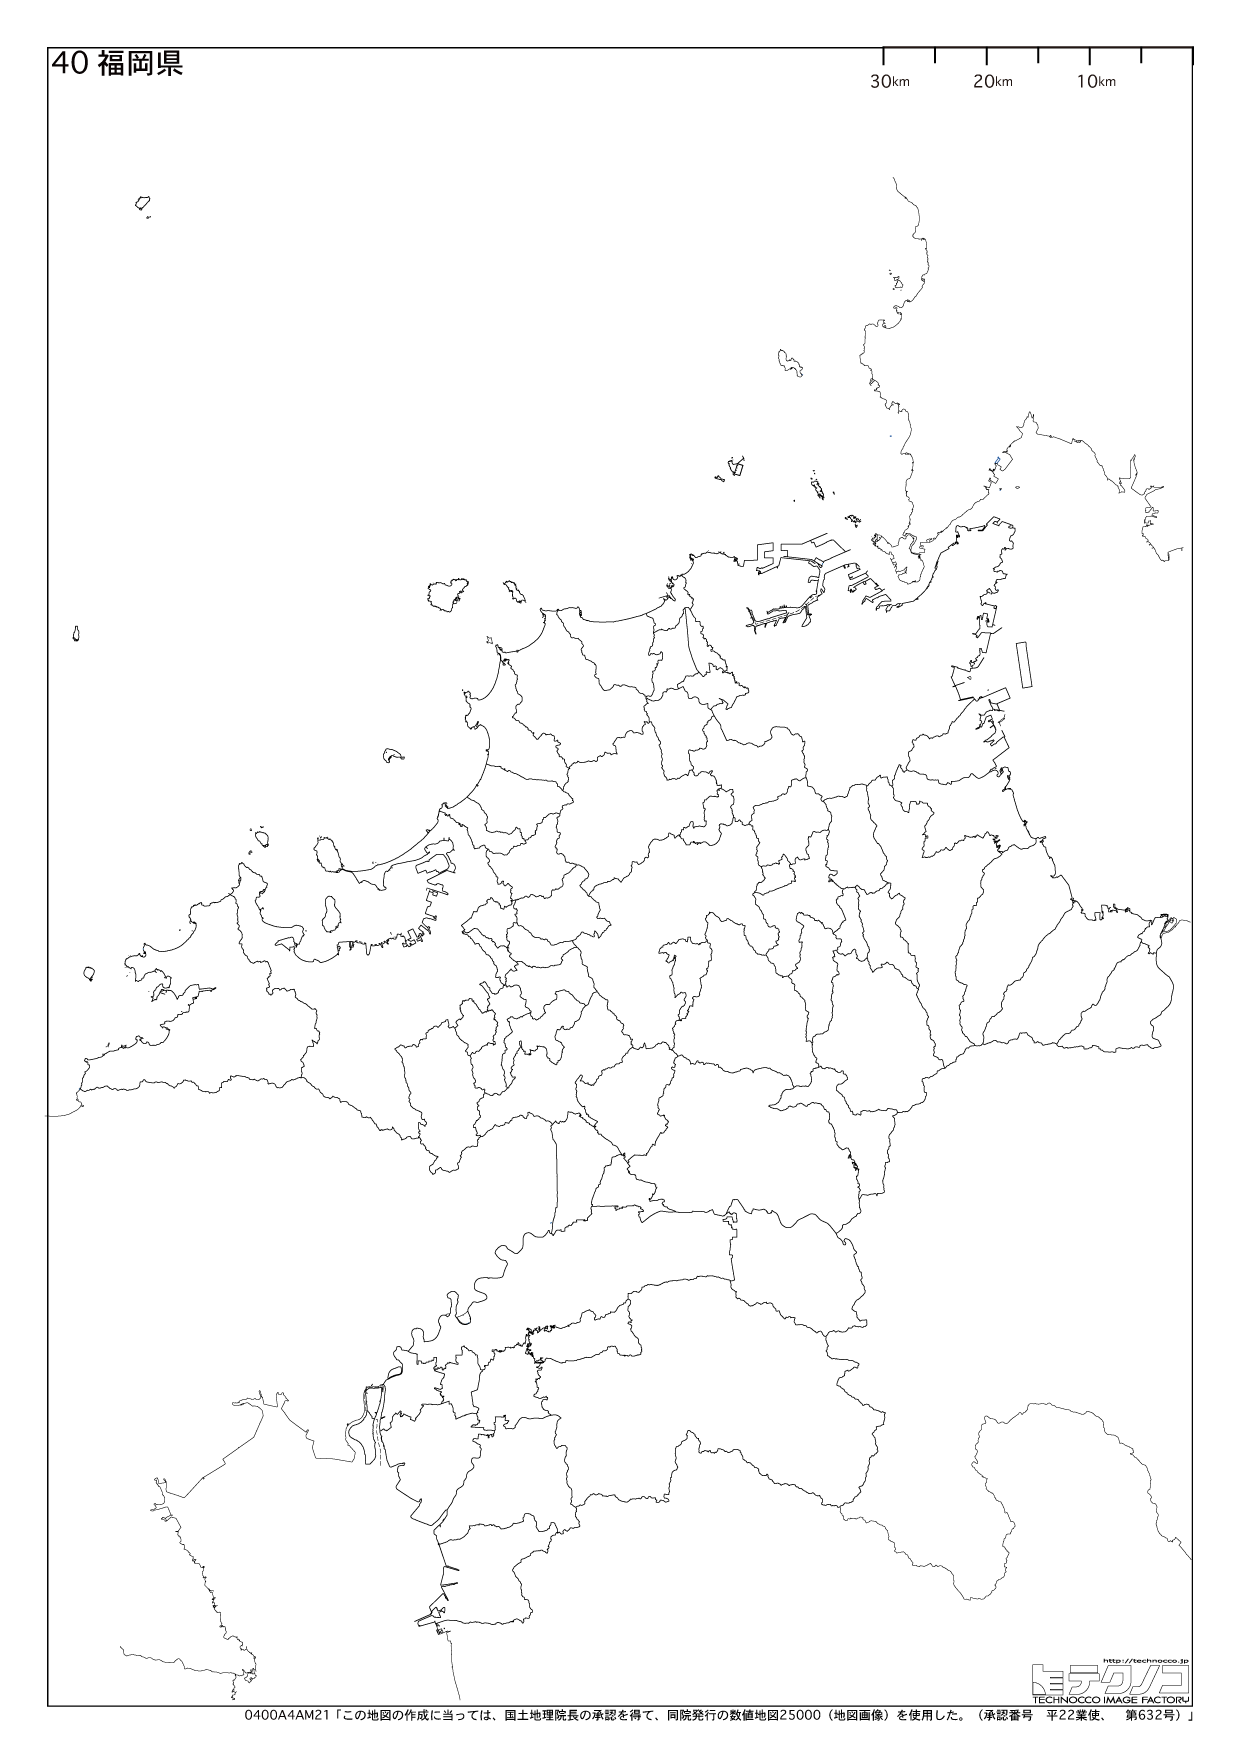 福岡県の白地図 都道府県コード40